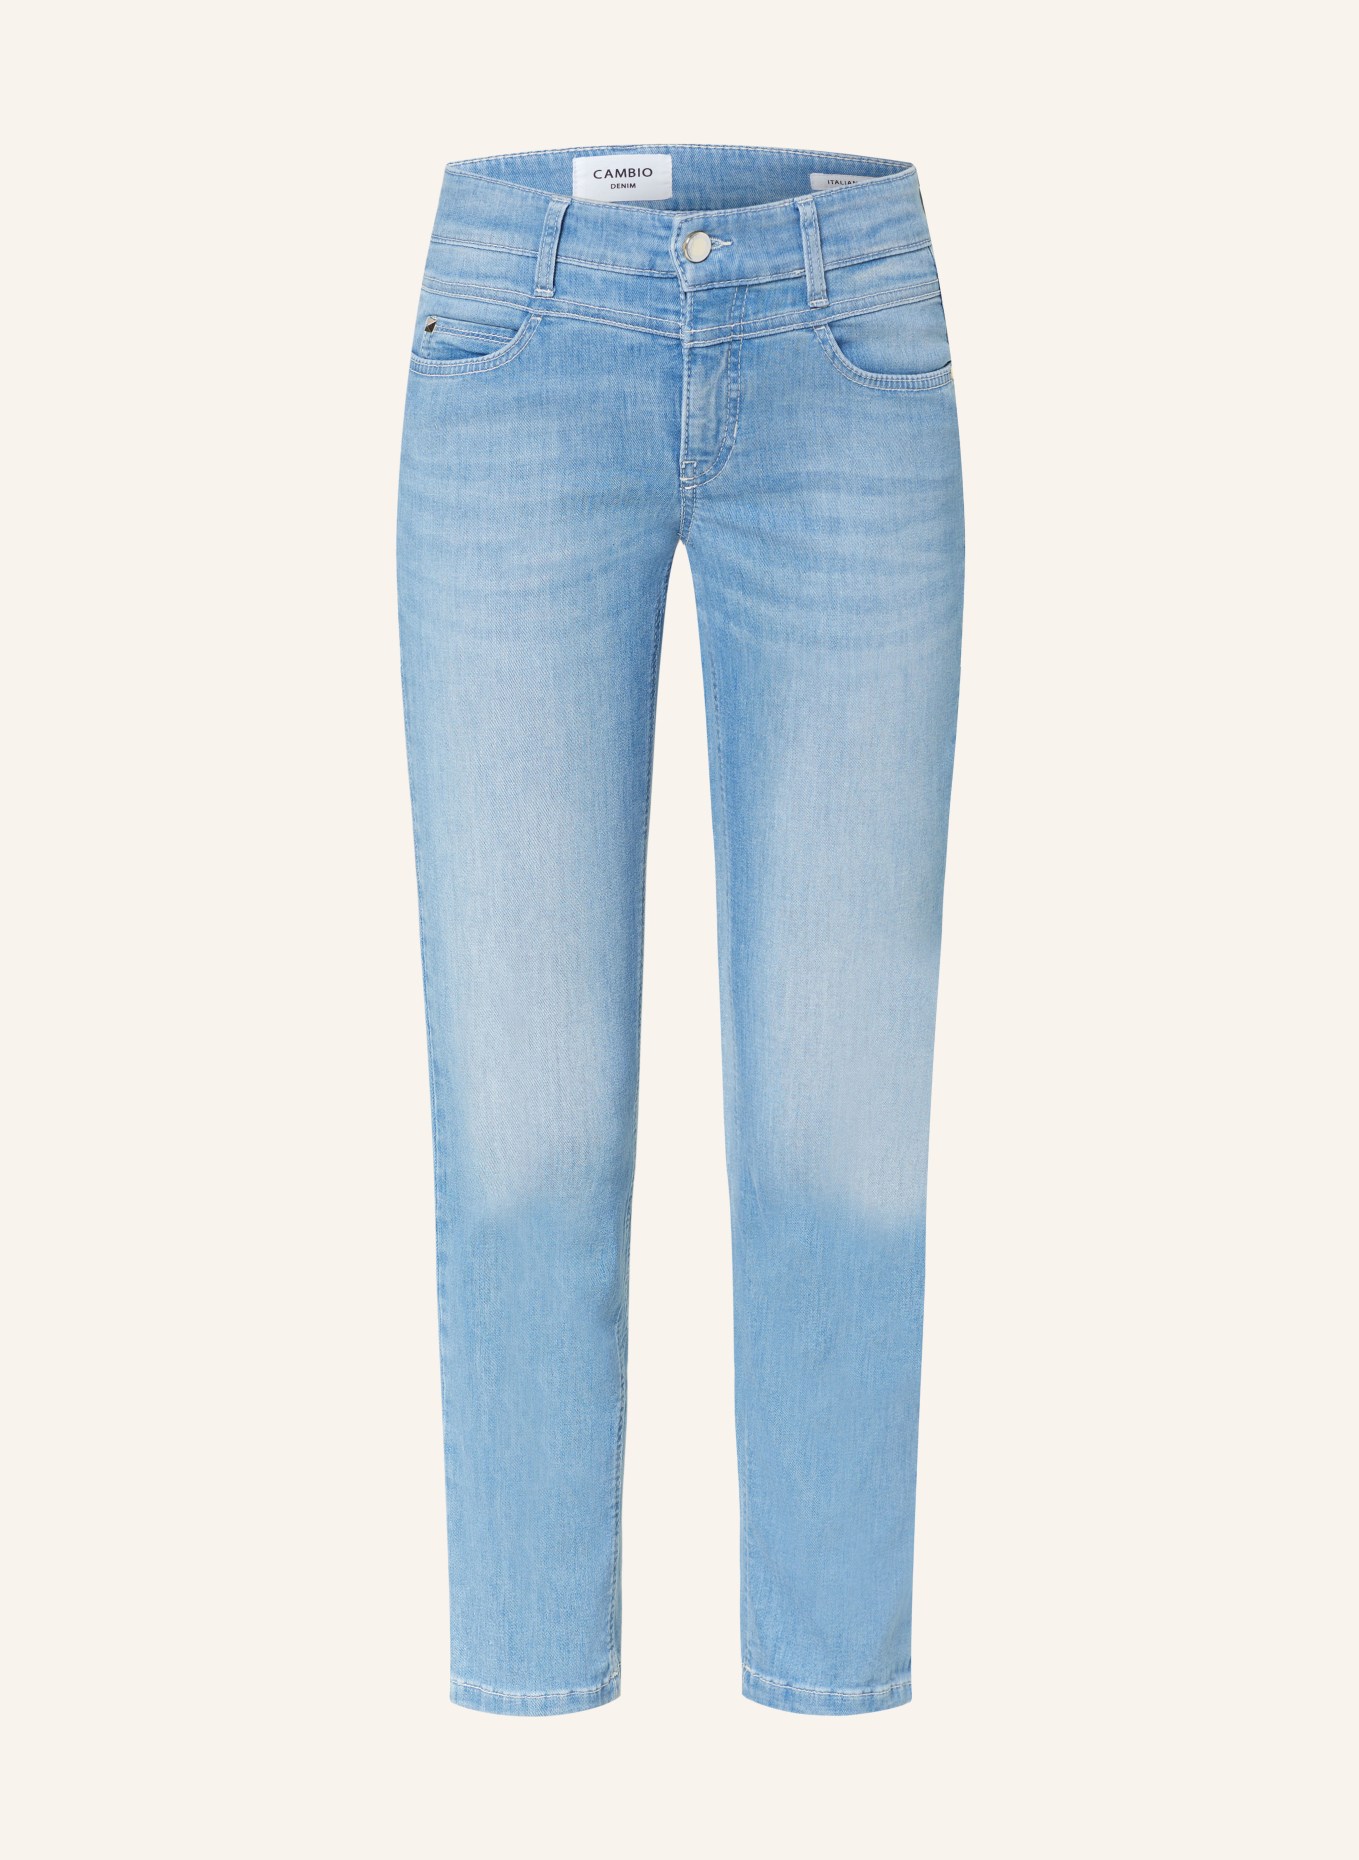 CAMBIO 7/8-Jeans POSH, Farbe: 5230 sunny bleached contrast (Bild 1)